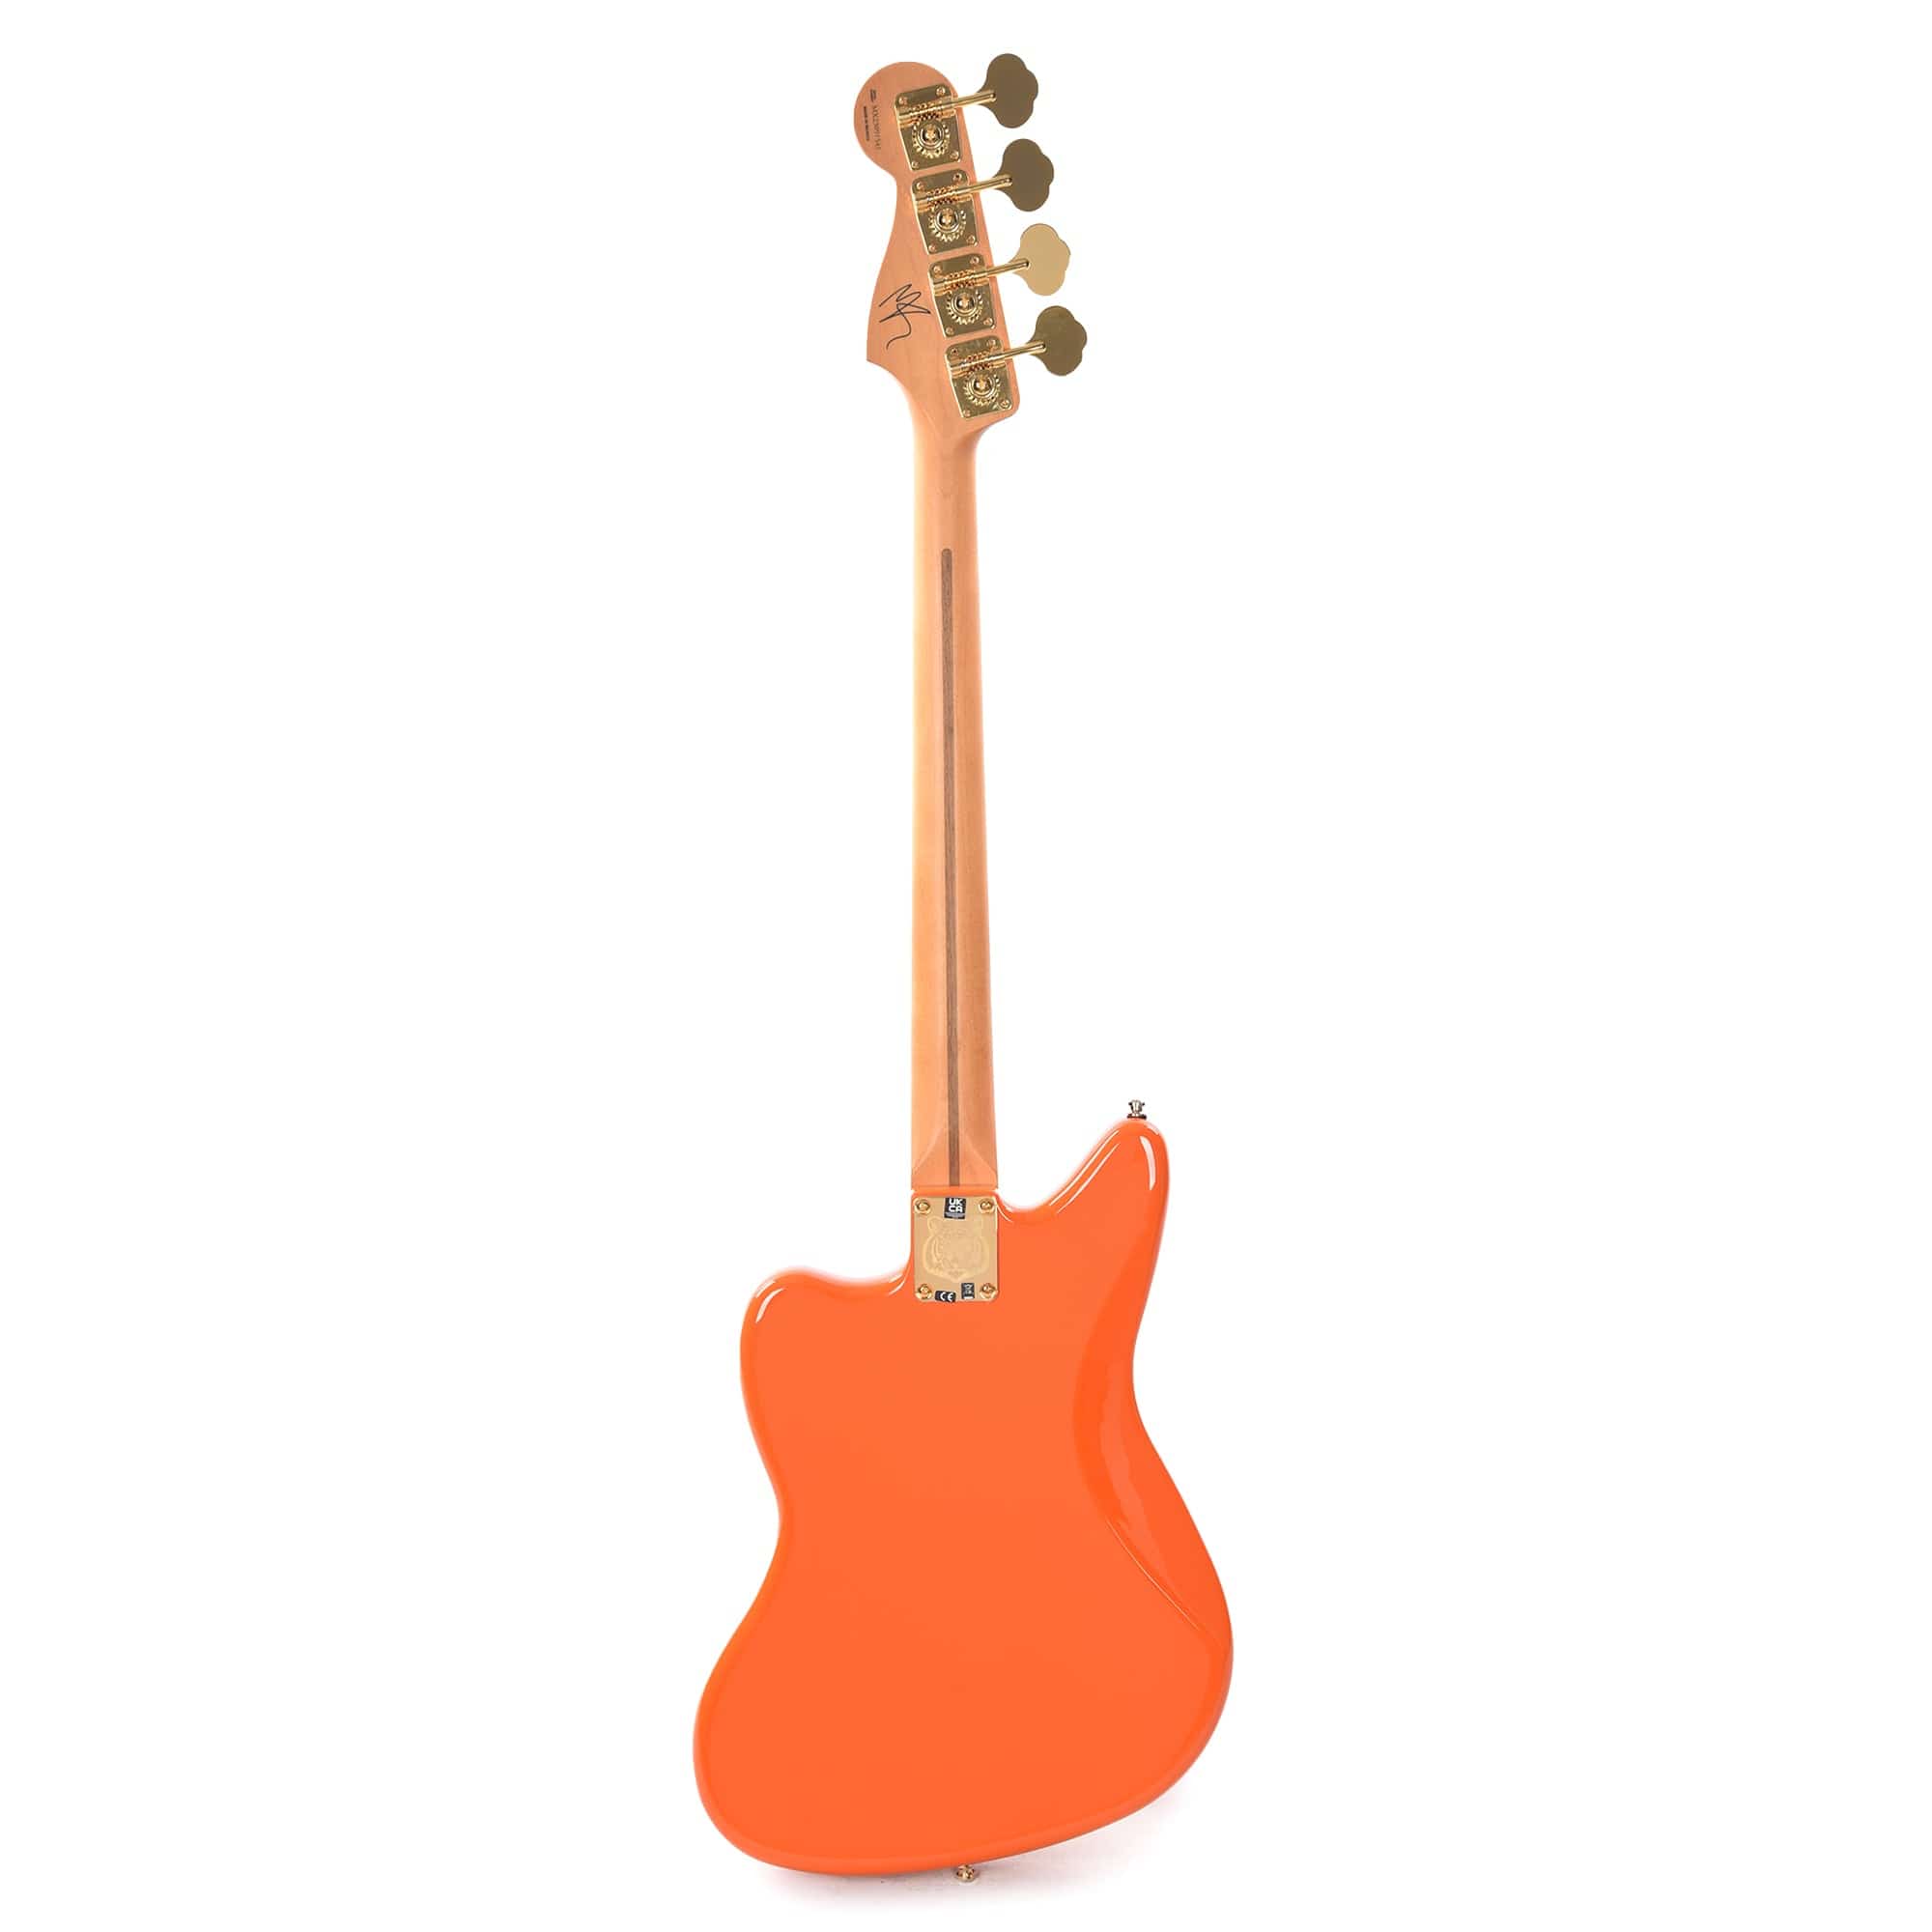 Fender Artist Limited Edition Mike Kerr Jaguar Bass Tiger's Blood Orange Bass Guitars / 4-String